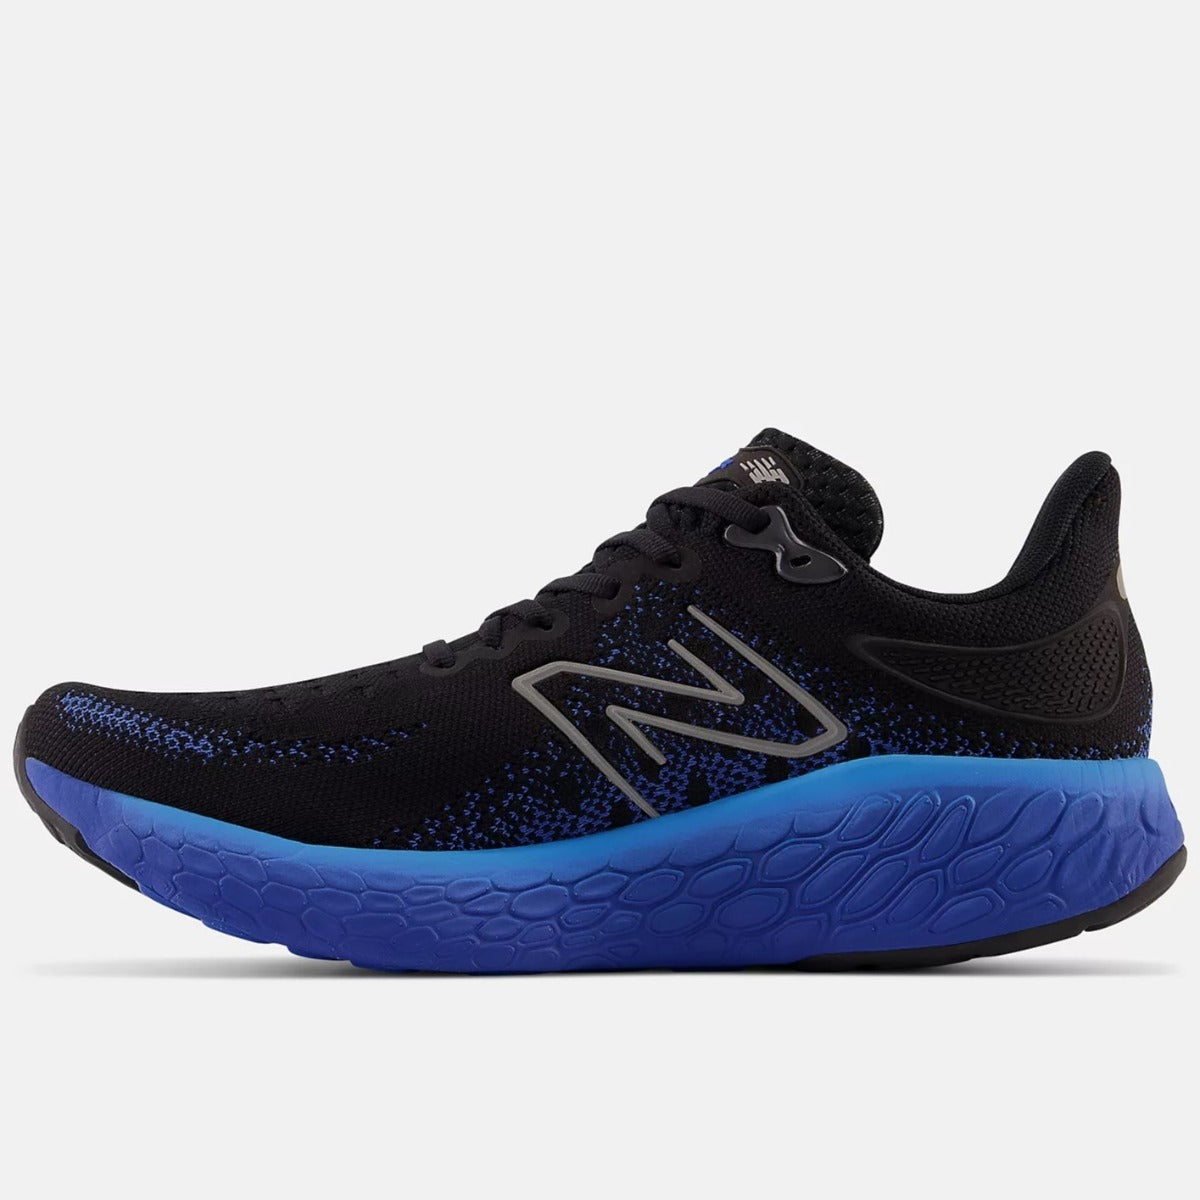 New Balance 1080v12 Running Shoes Men's Wide (Black Cobalt)